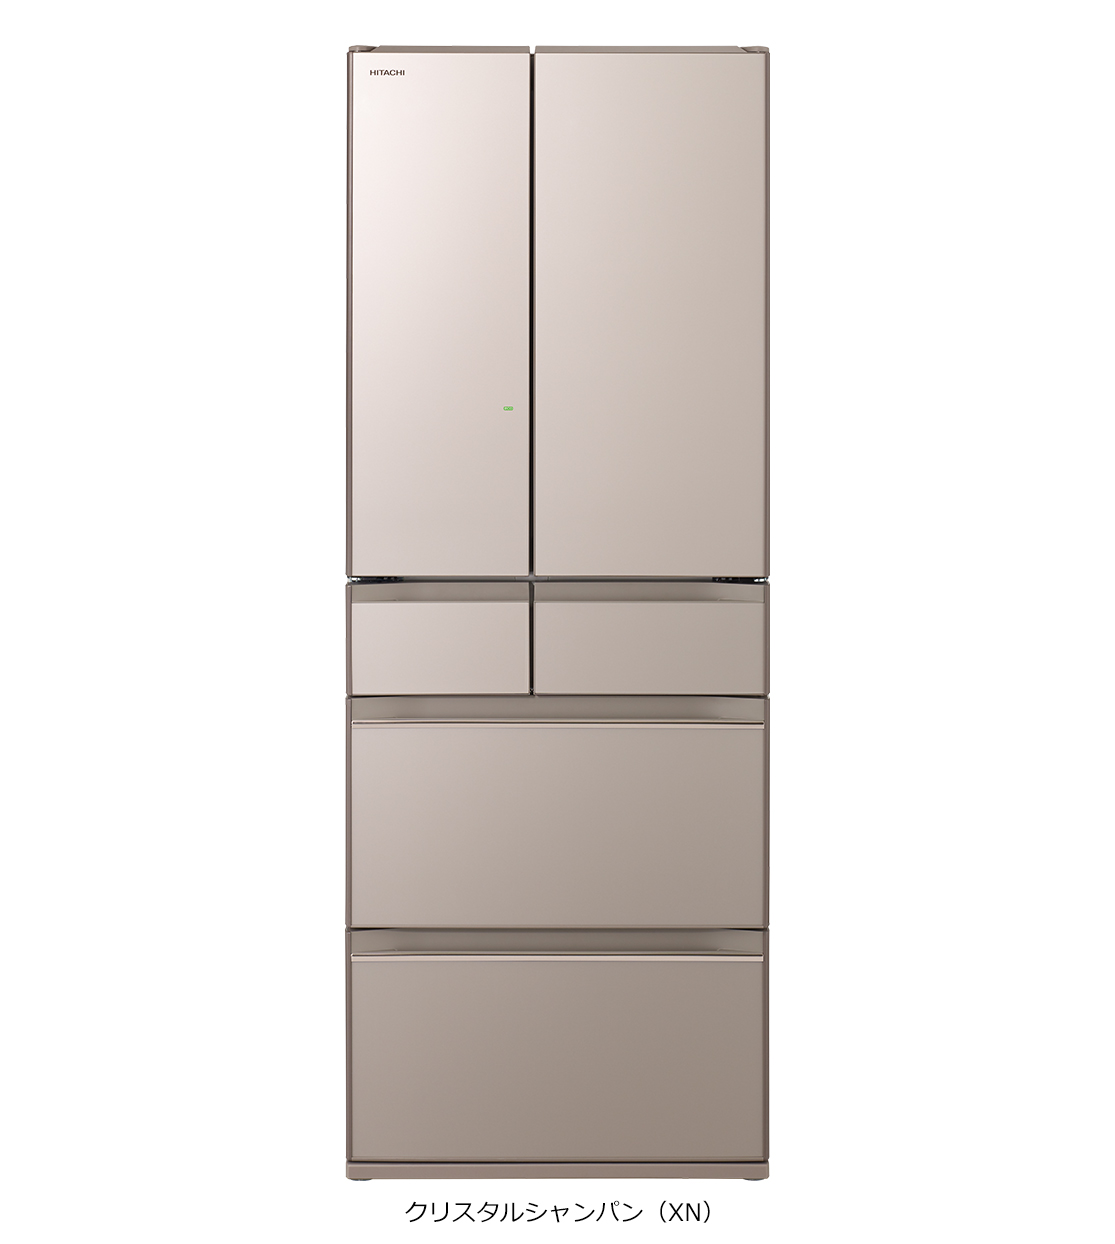 仕様：真空チルド HWシリーズ ： 冷蔵庫 ： 日立の家電品